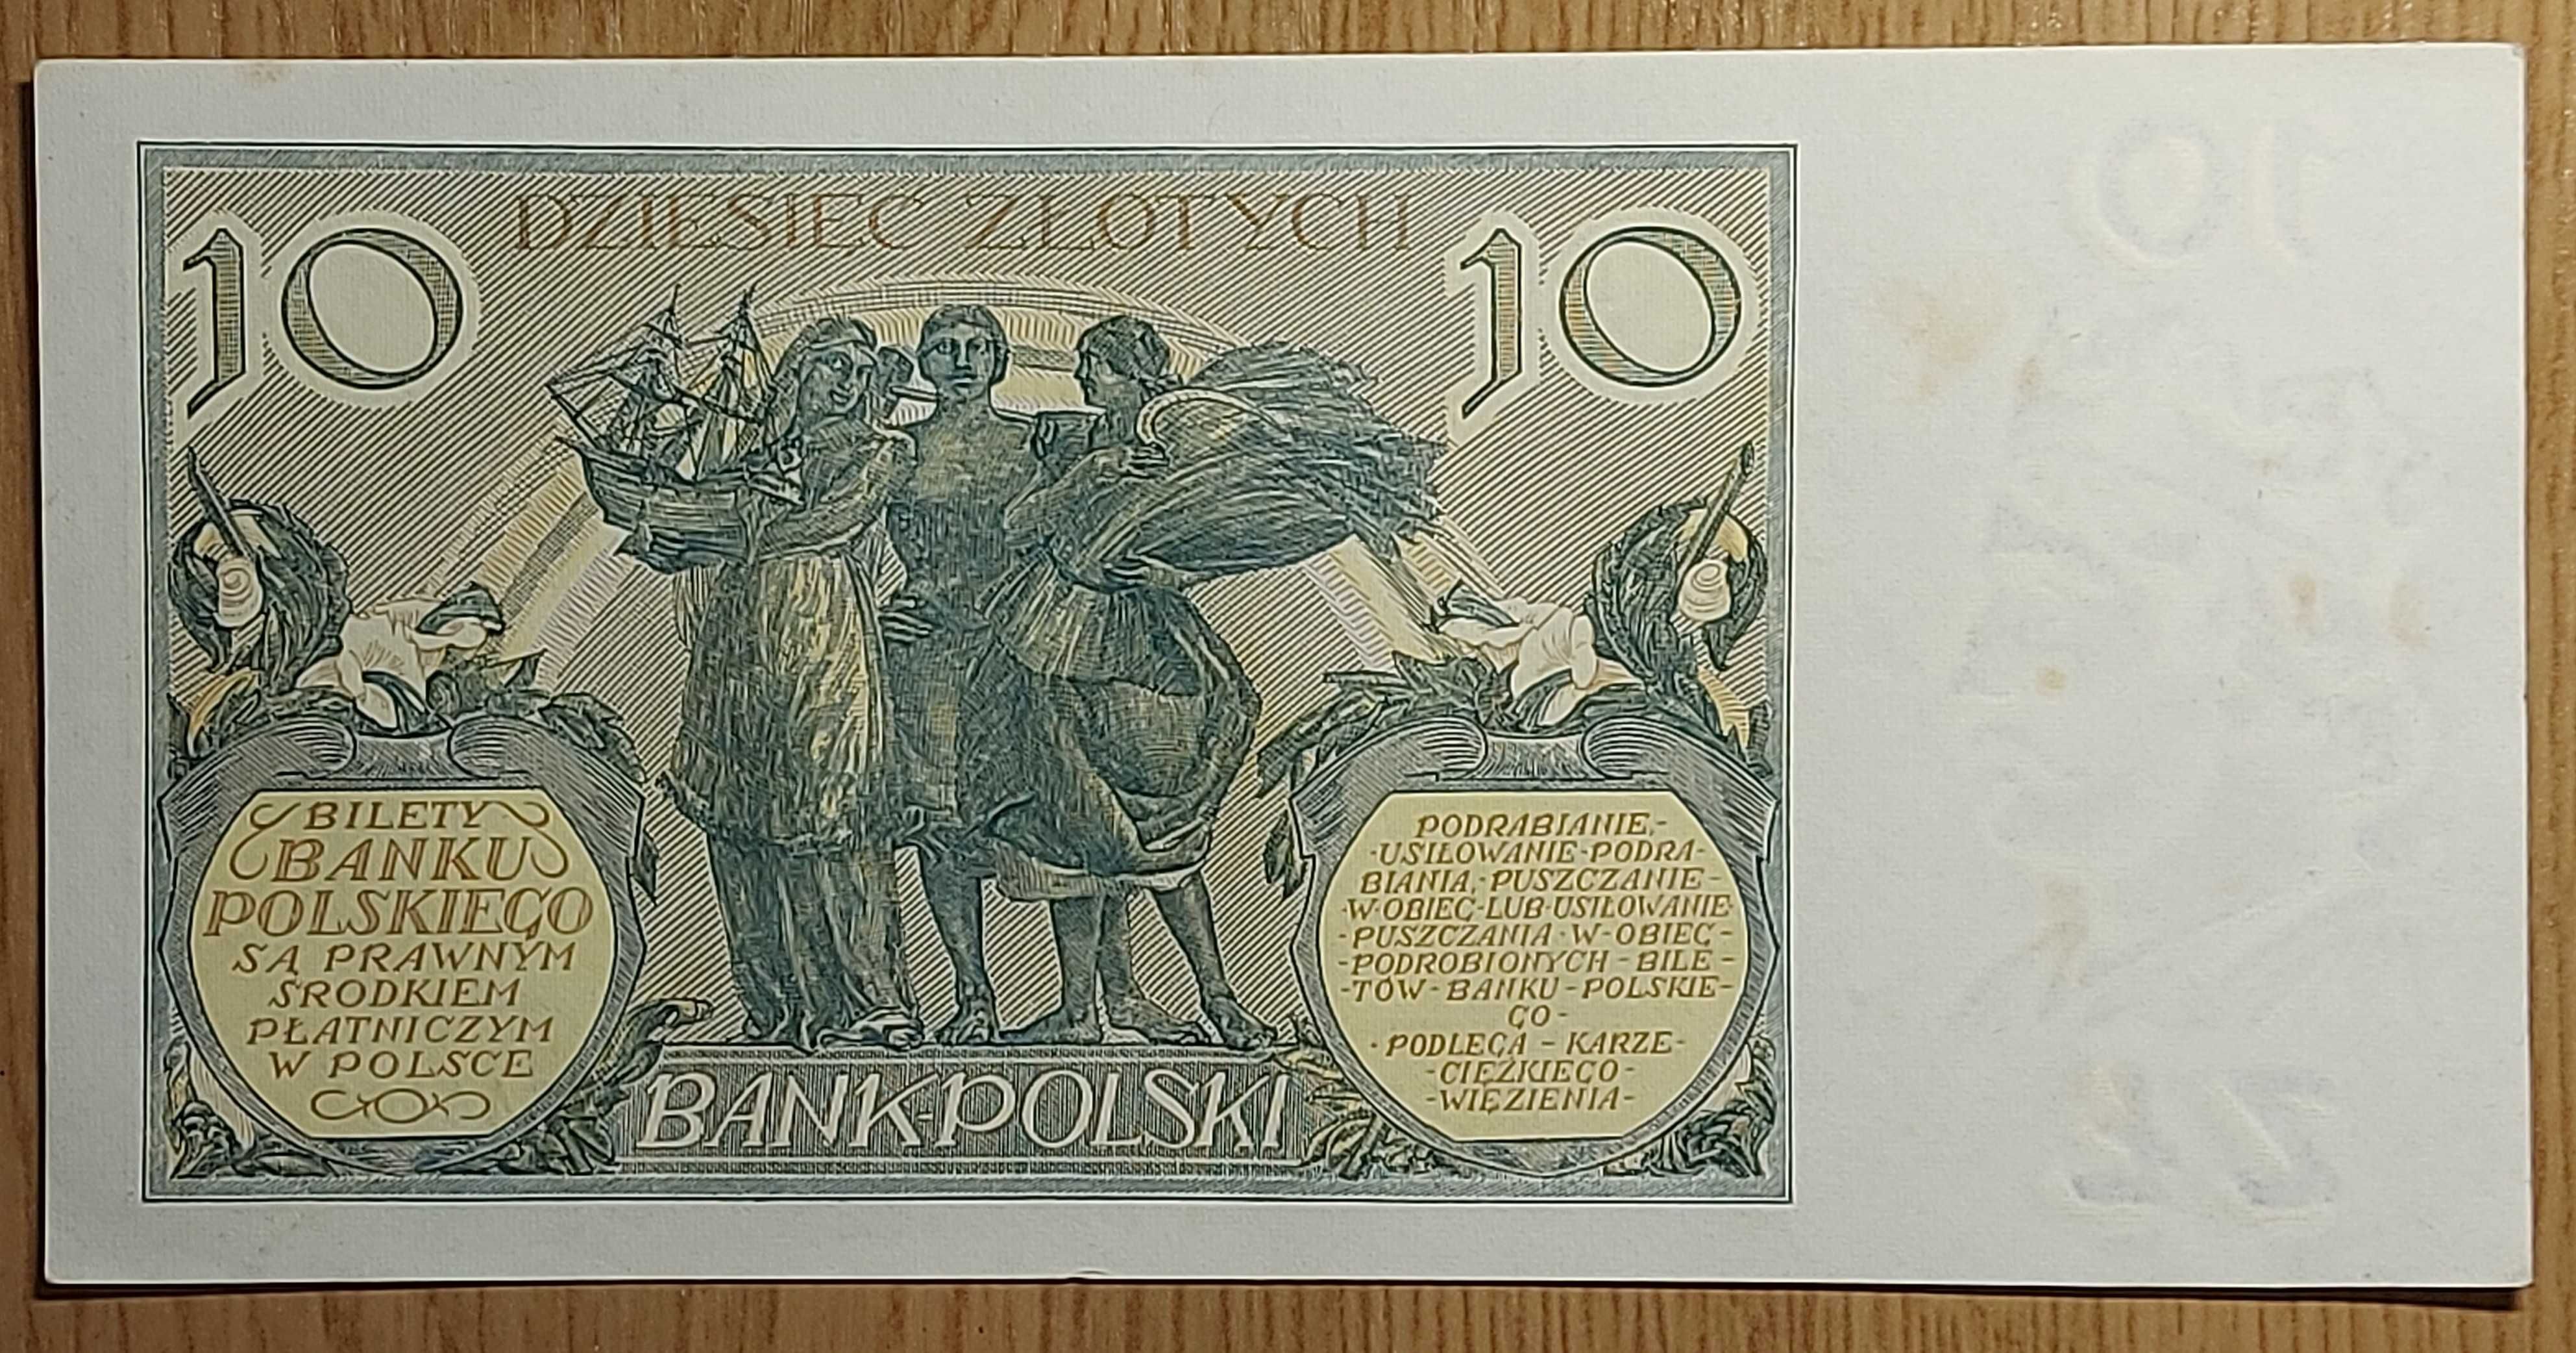 Banknot 10 złotych, emisja z roku 1929.